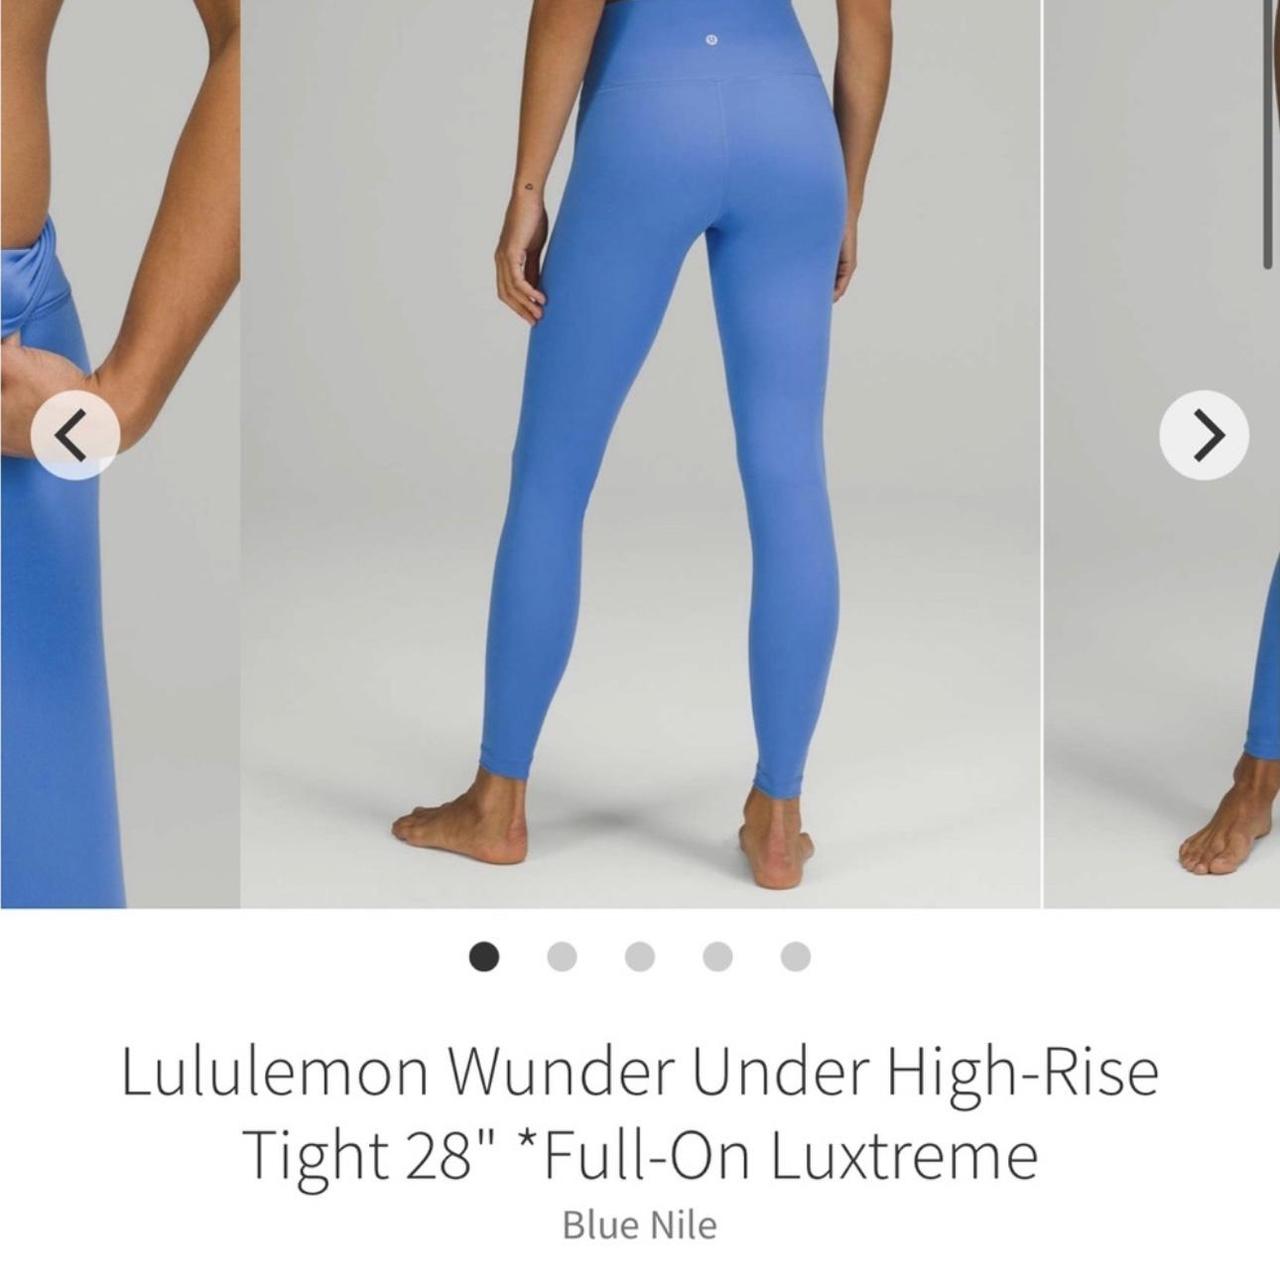 Blue Nile wunder under 28” size 6 Sold out color No - Depop